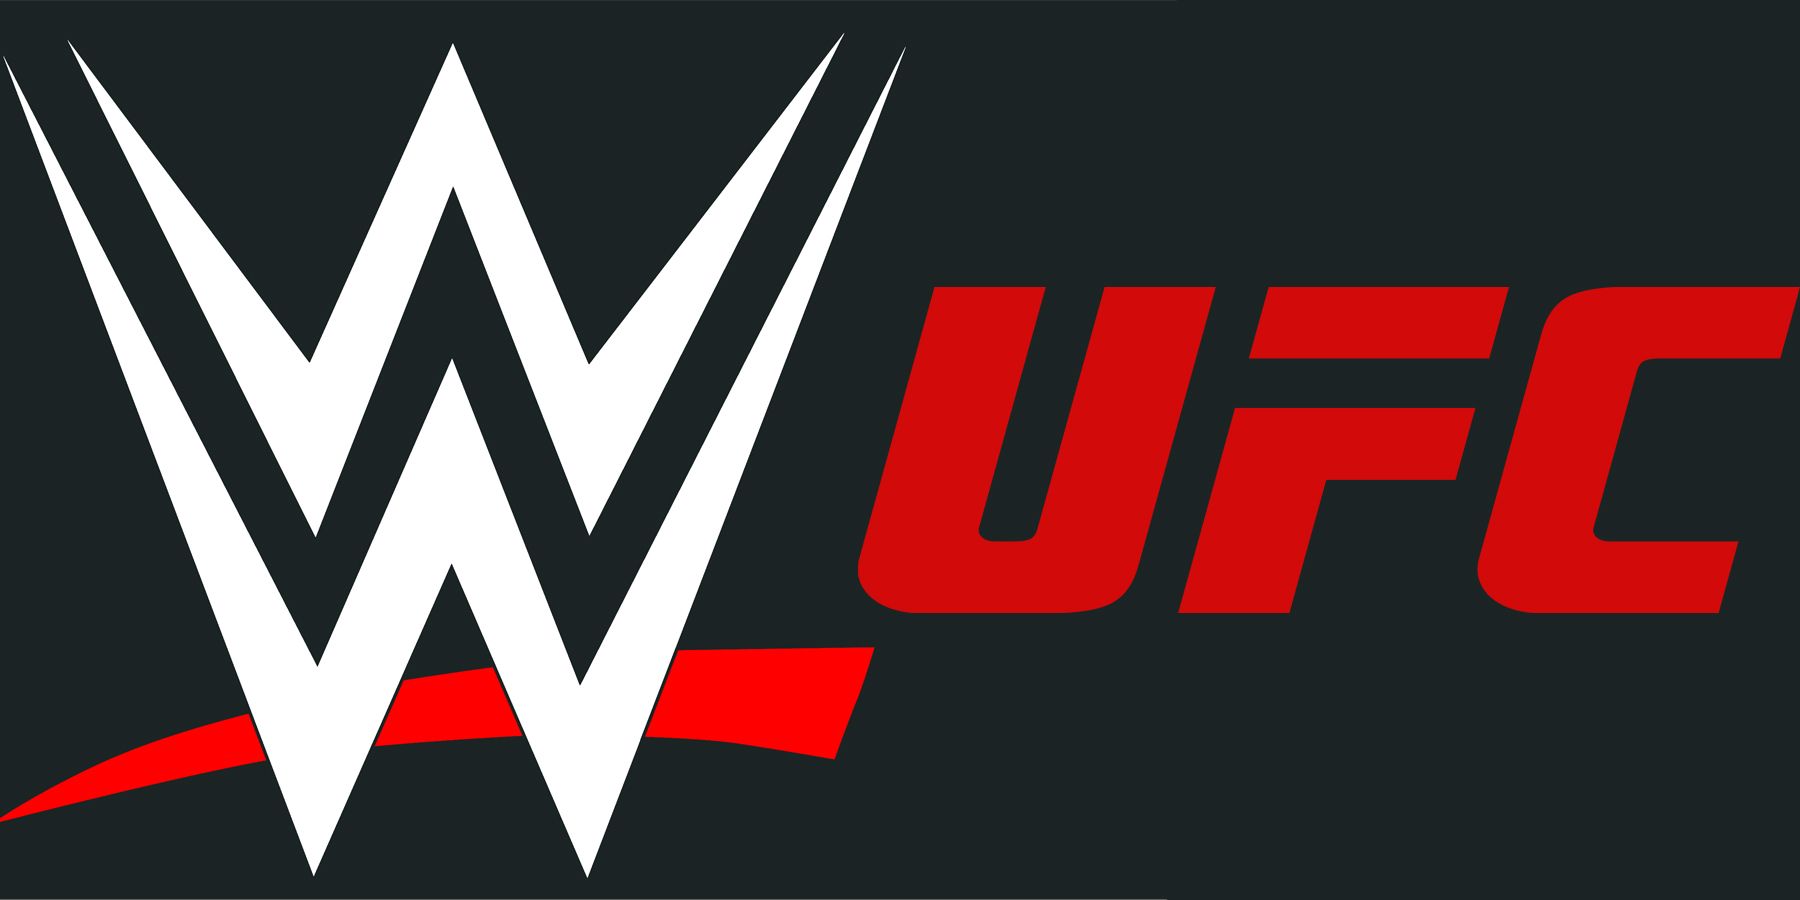 WWE UFC merger